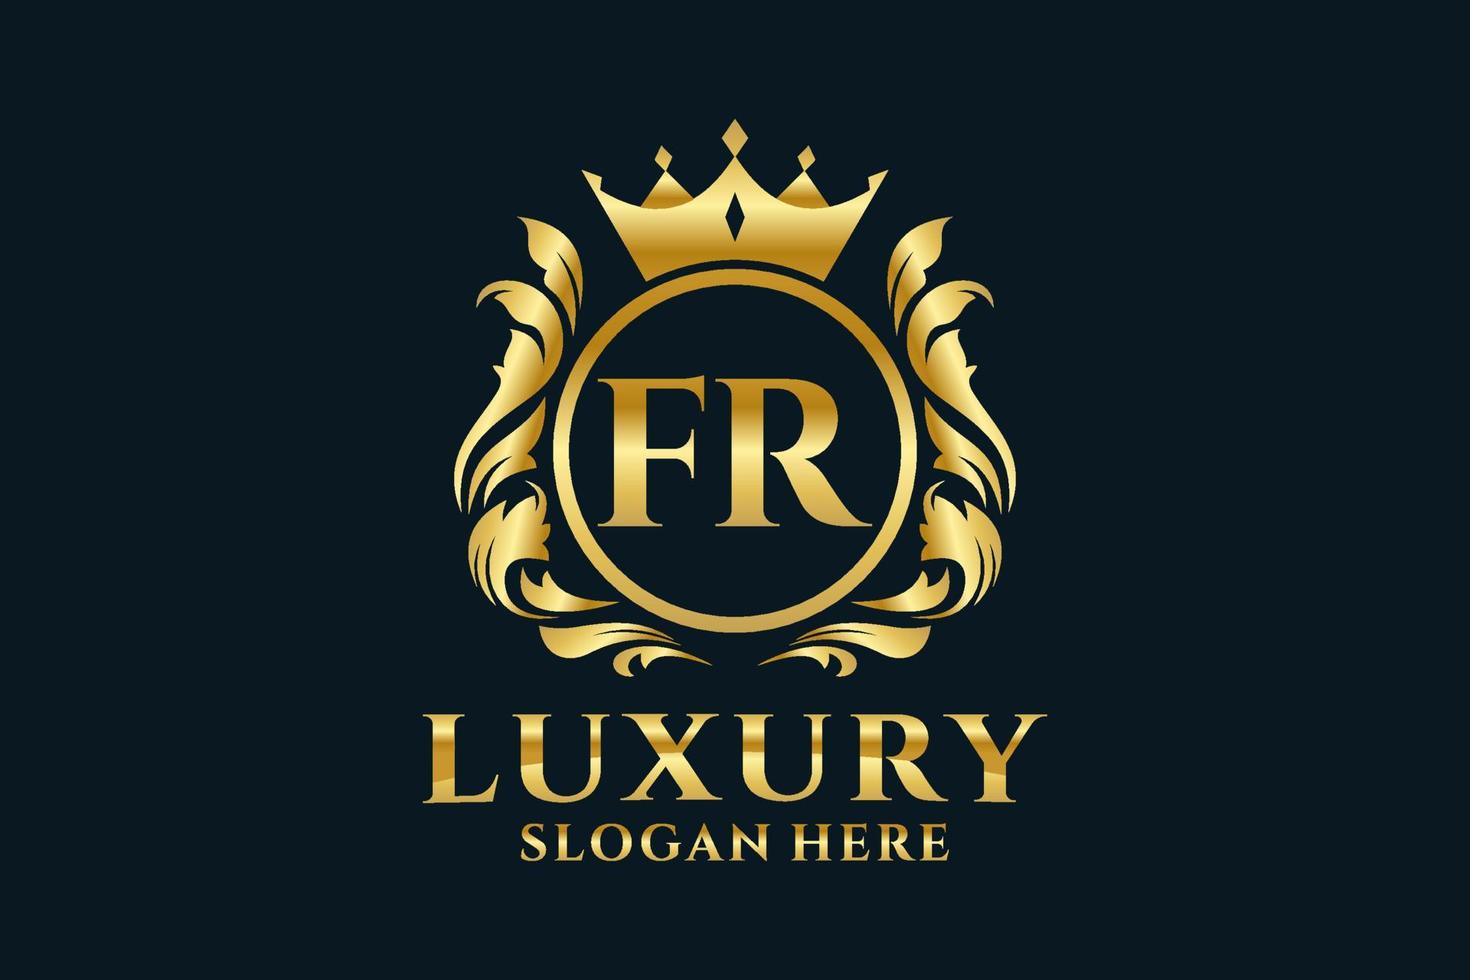 königliche Luxus-Logo-Vorlage mit anfänglichem fr-Buchstaben in Vektorgrafiken für luxuriöse Branding-Projekte und andere Vektorillustrationen. vektor